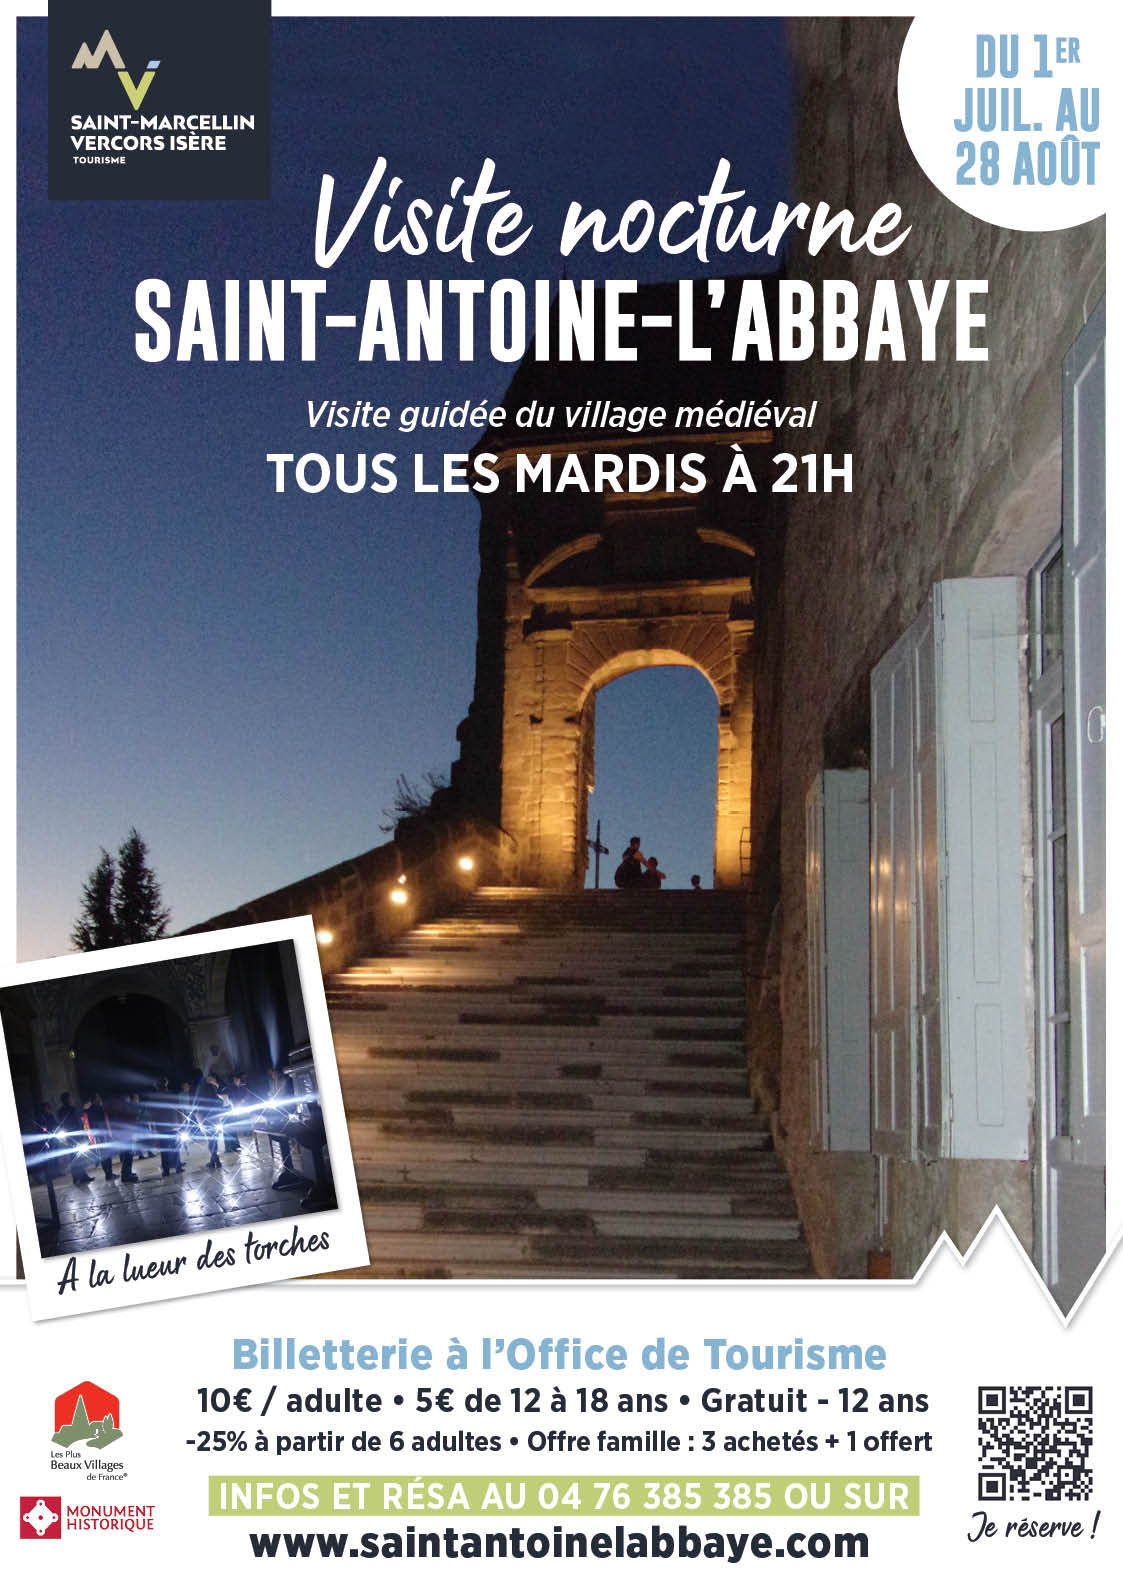 Visite guidée nocturne Saint-Antoine-l'Abbaye